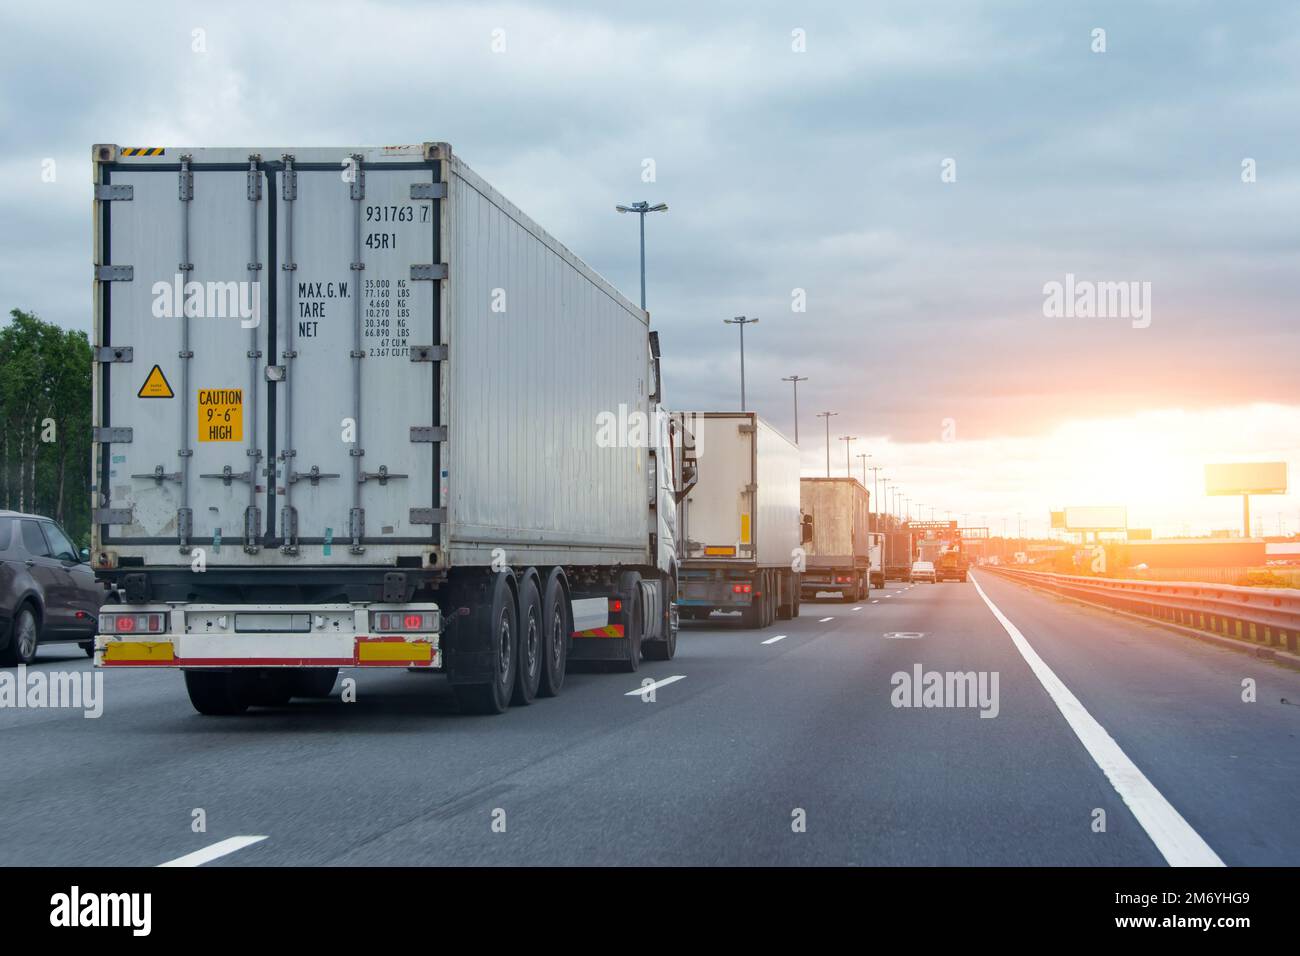 Camion auto camion in ingorgo traffico alla frontiera personalizzata zona, ora del tramonto Foto Stock